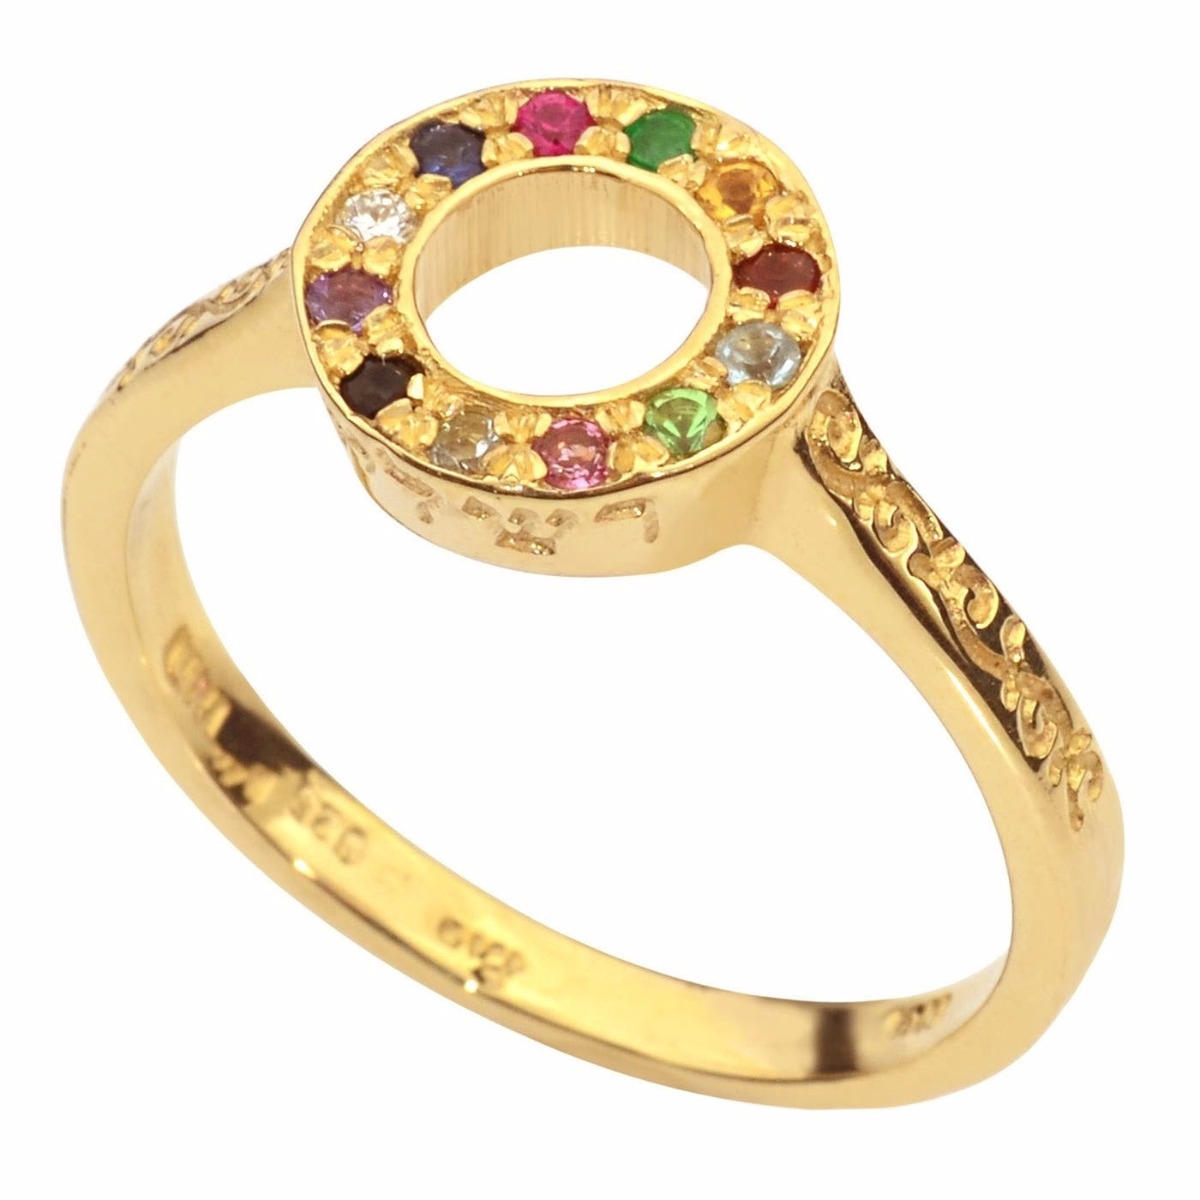 9K Gold Round Chosen "Rachel" Ring with Gemstones - 1